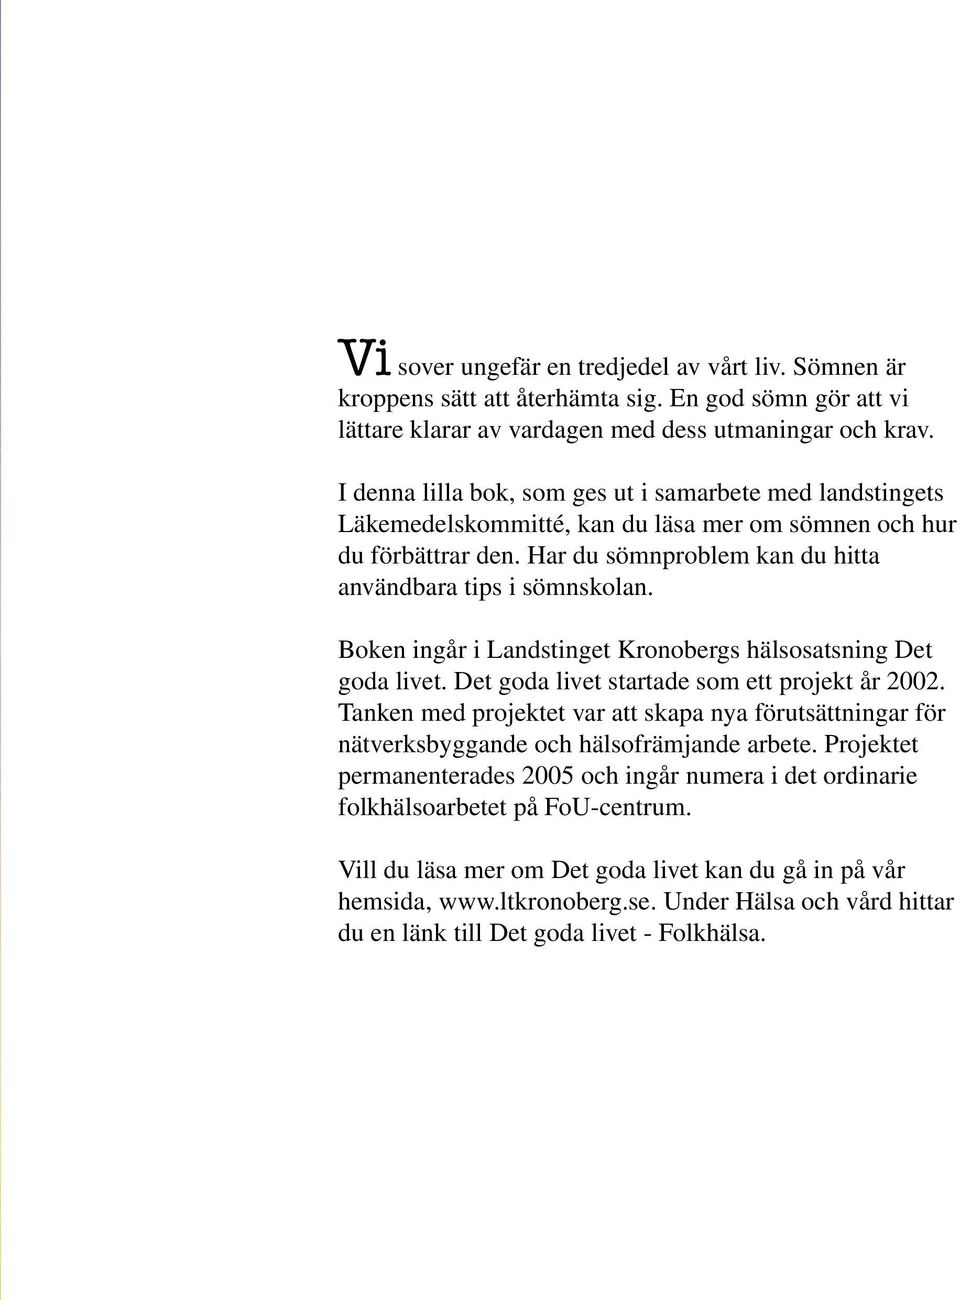 Boken ingår i Landstinget Kronobergs hälsosatsning Det goda livet. Det goda livet startade som ett projekt år 2002.